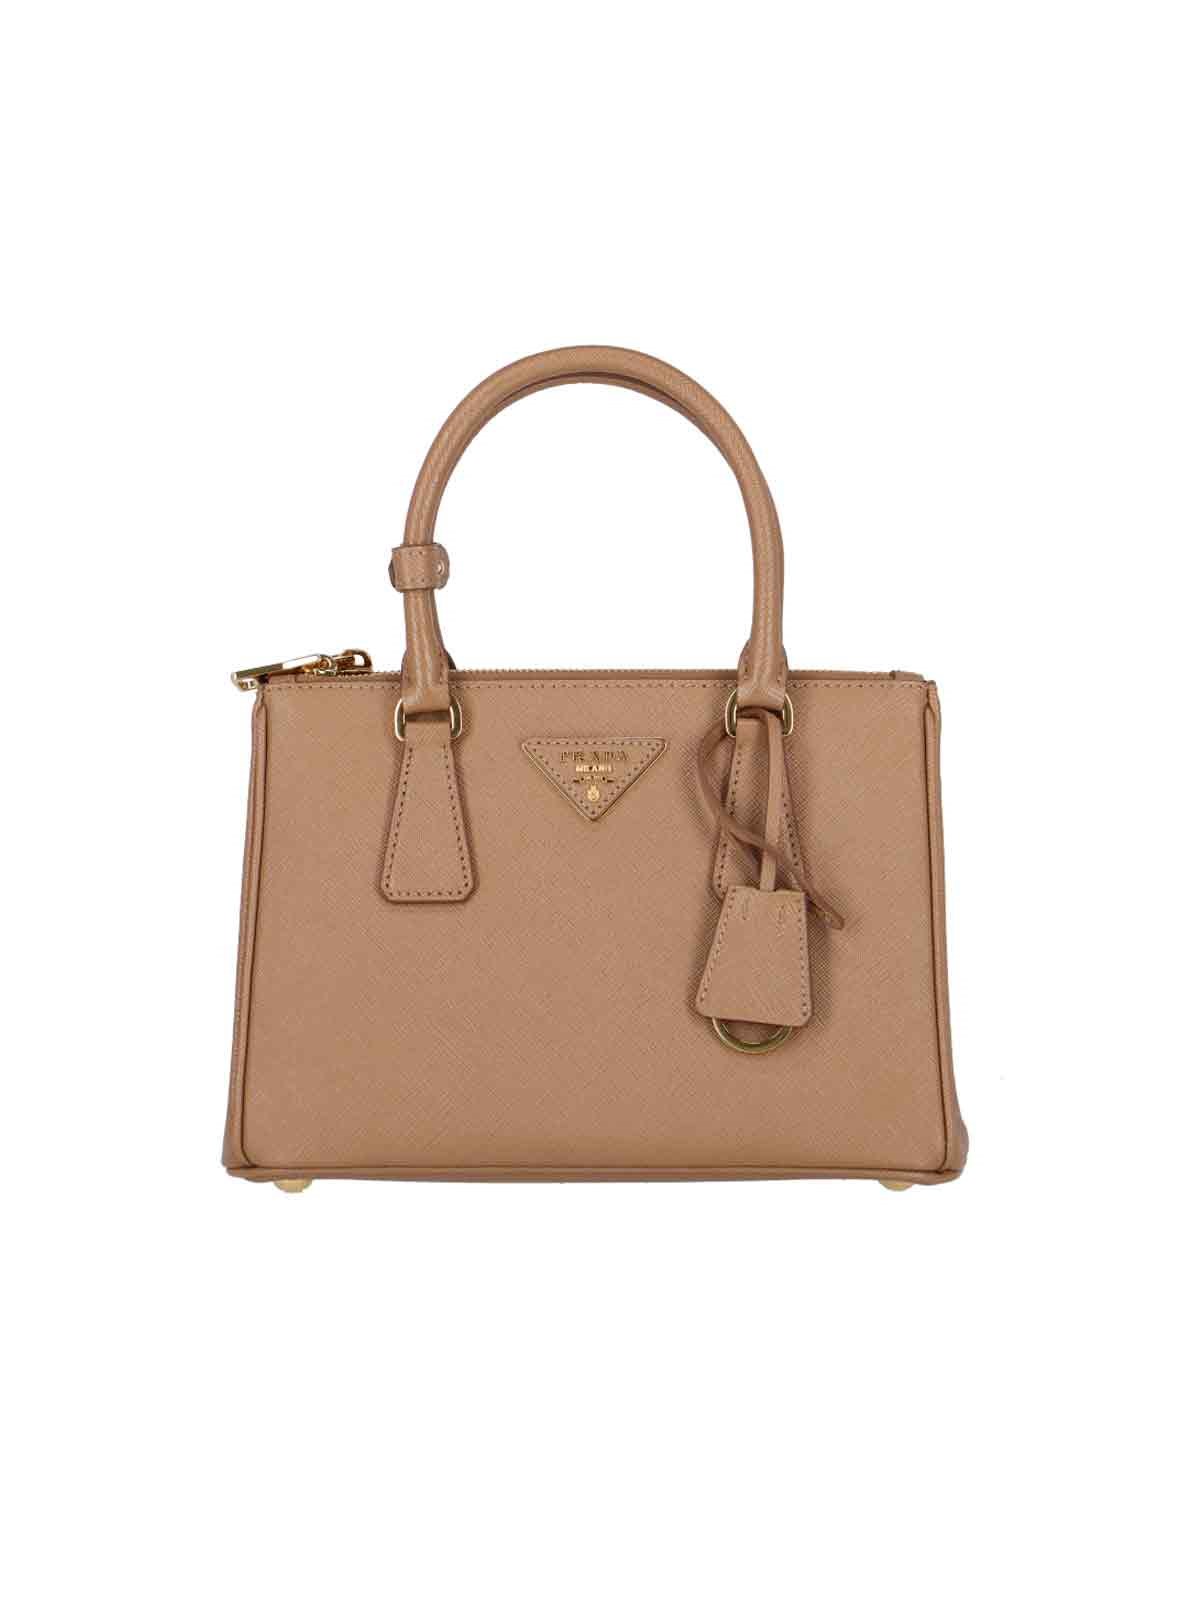 Prada 'galleria' Handbag In Brown